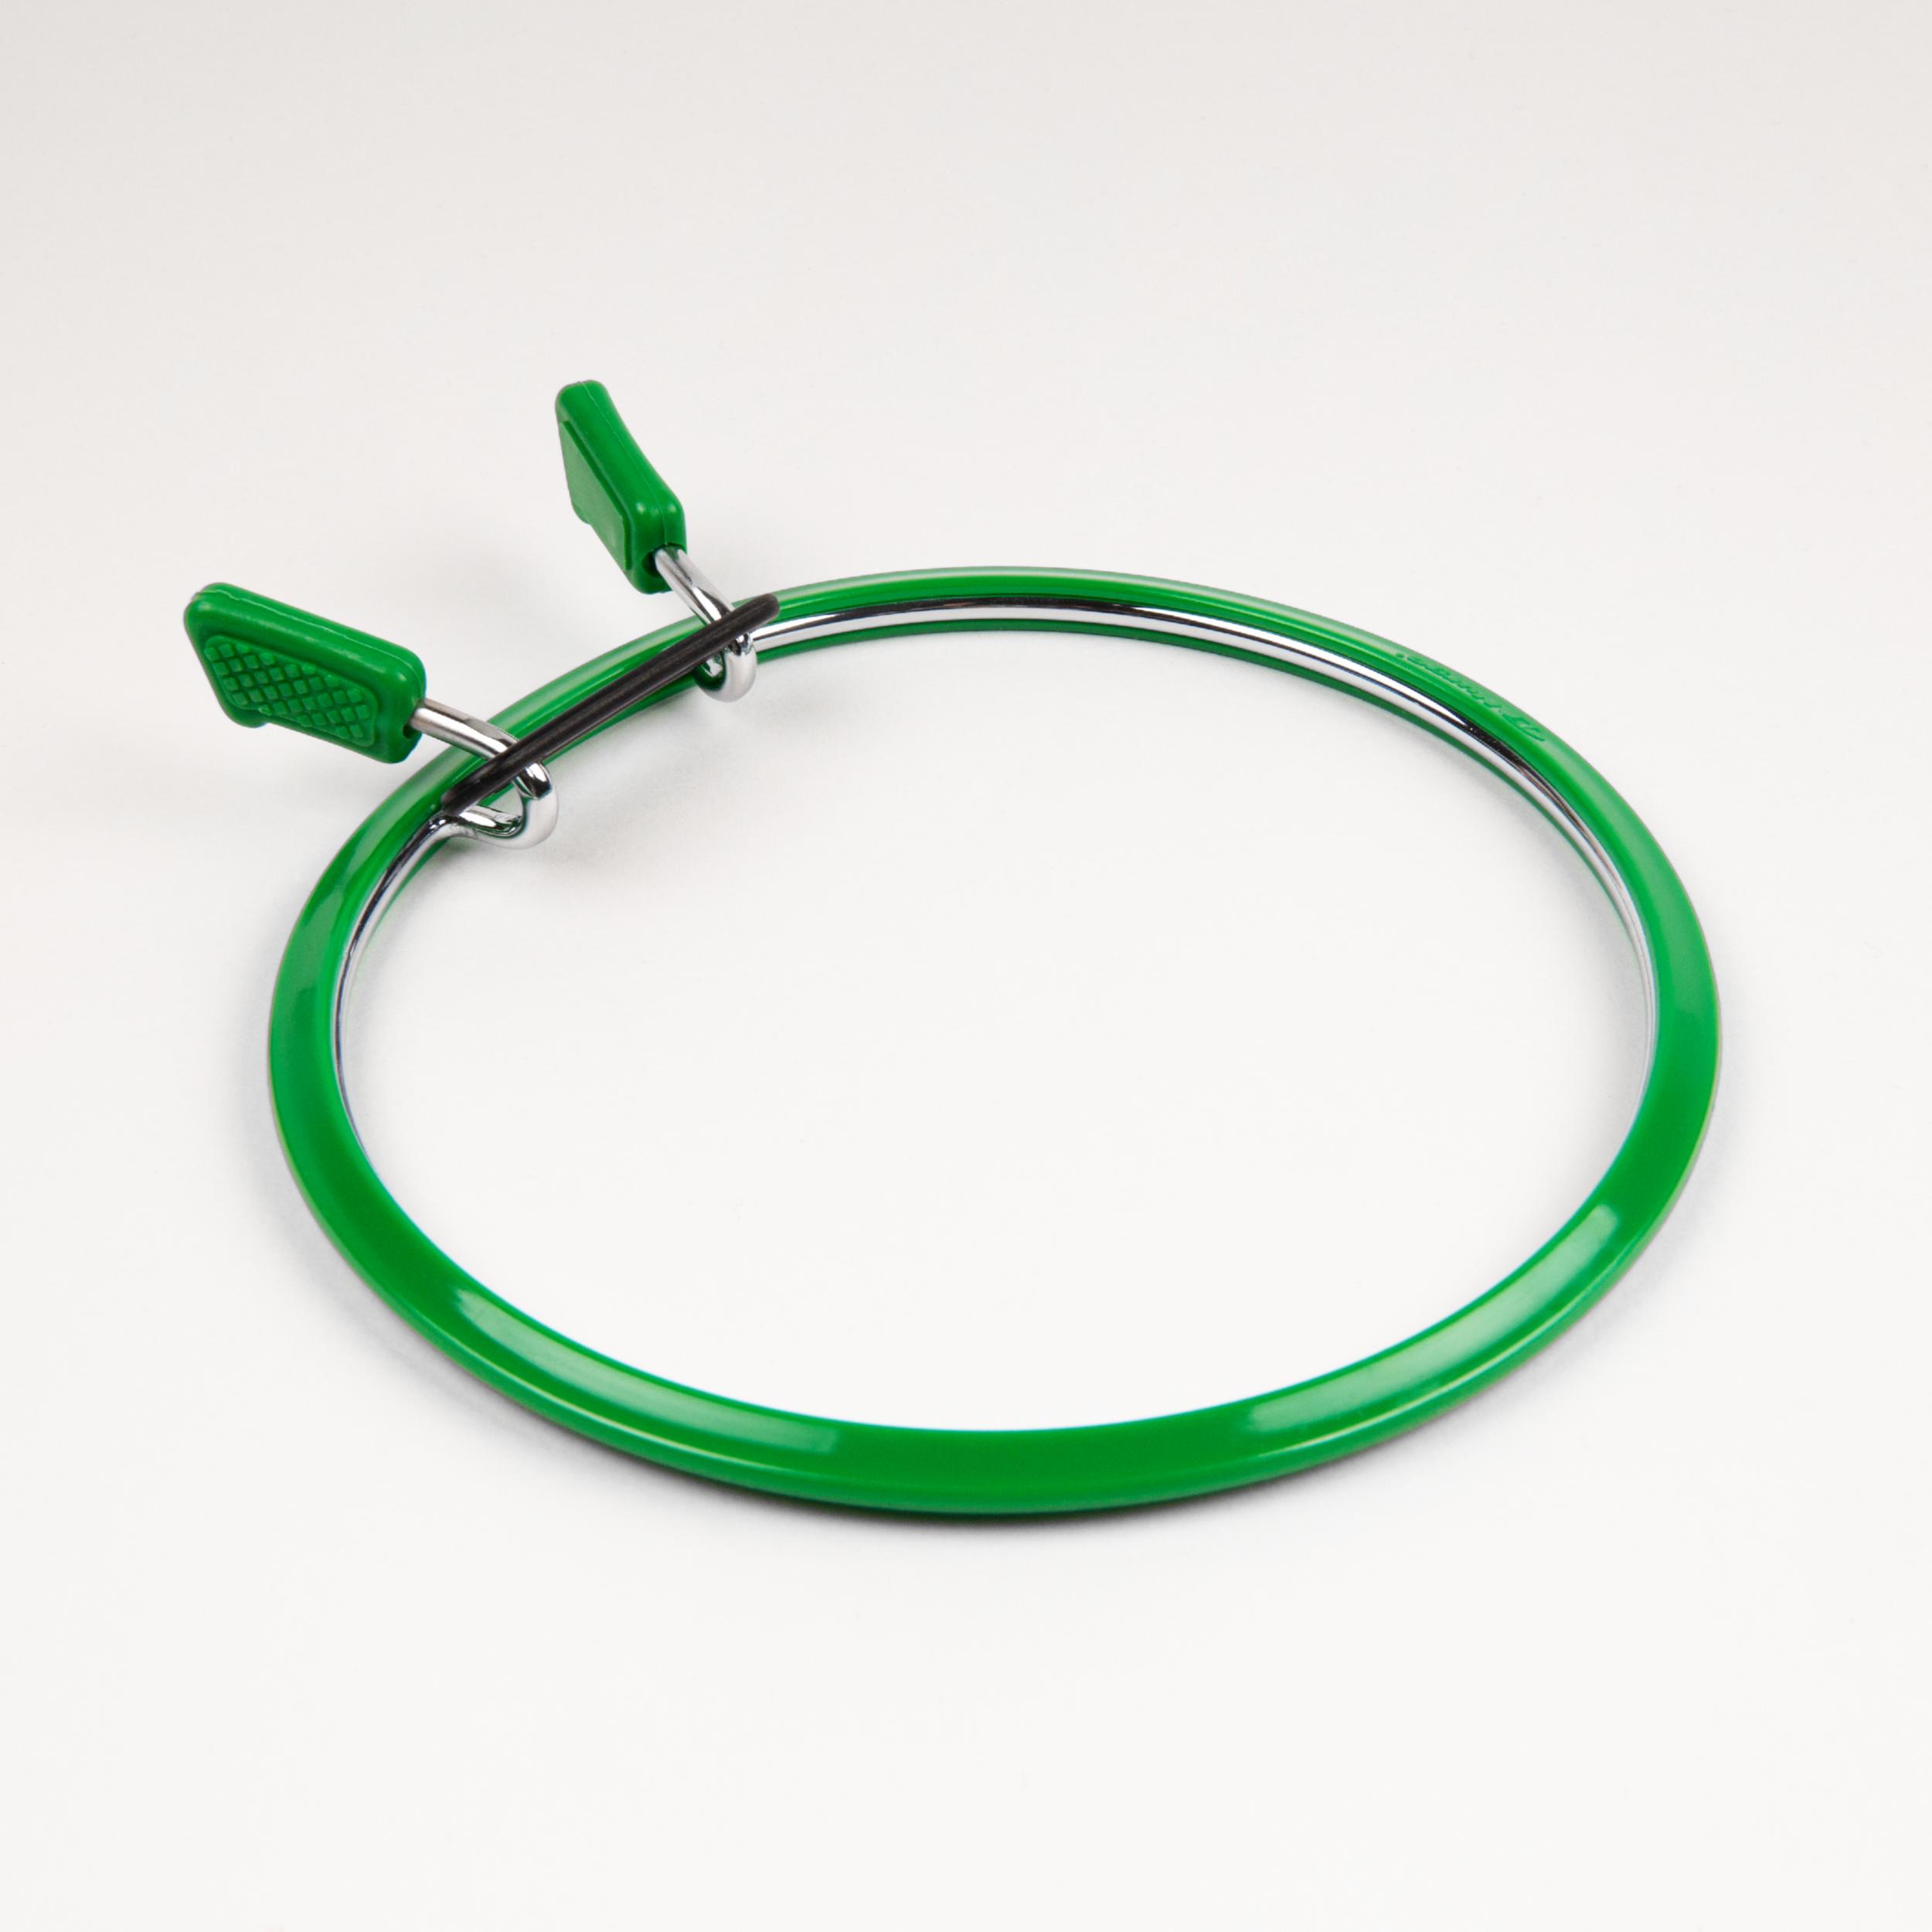 160-2/зелені Пяльці Nurge пружинні для вишивання та штопки, висота обідка 5мм, діаметр 126мм